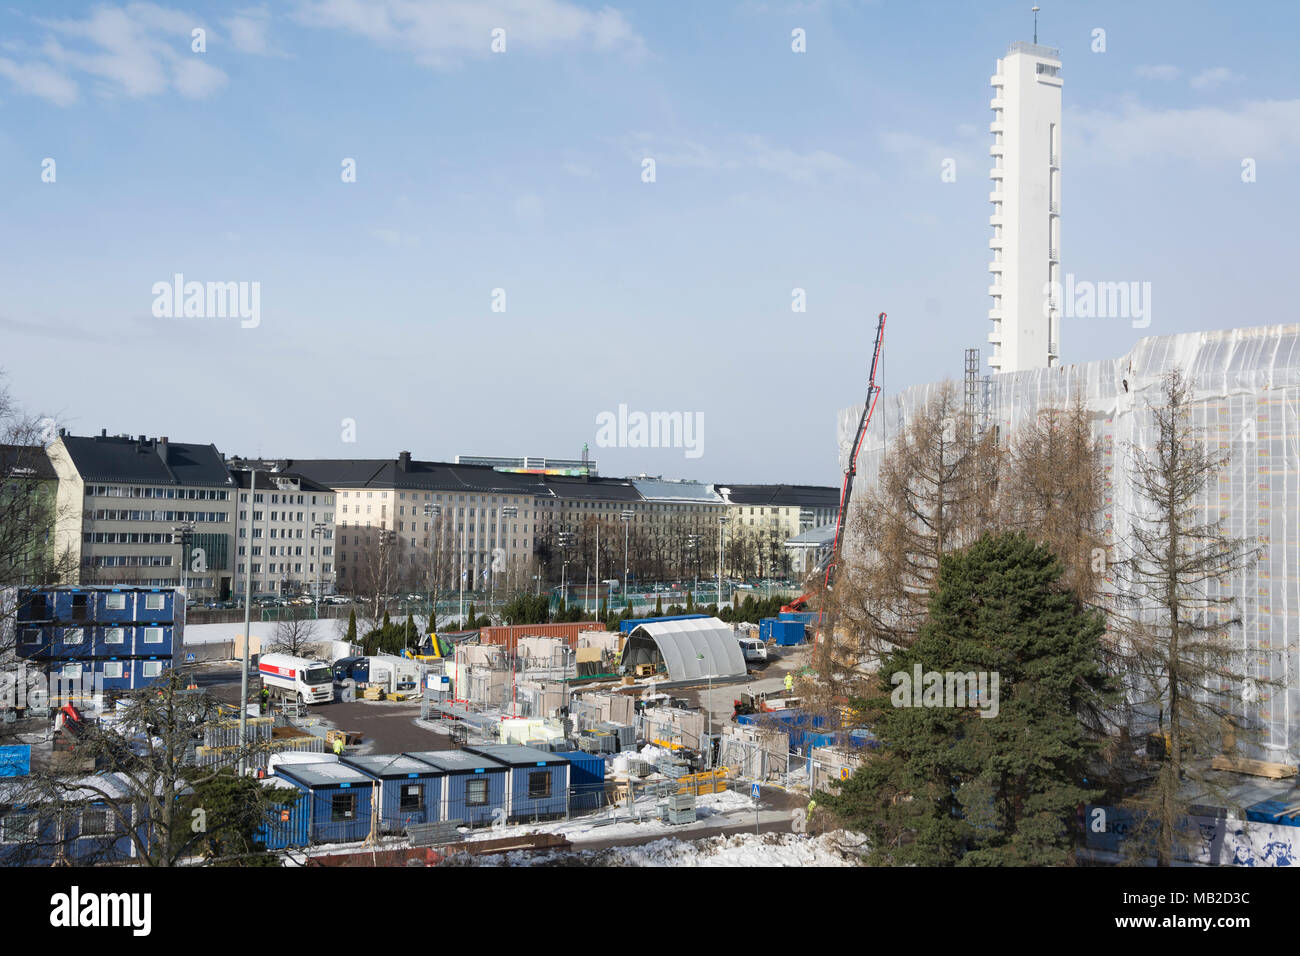 Le stade olympique d'Helsinki est en cours de rénovation à Helsinki, en Finlande Banque D'Images